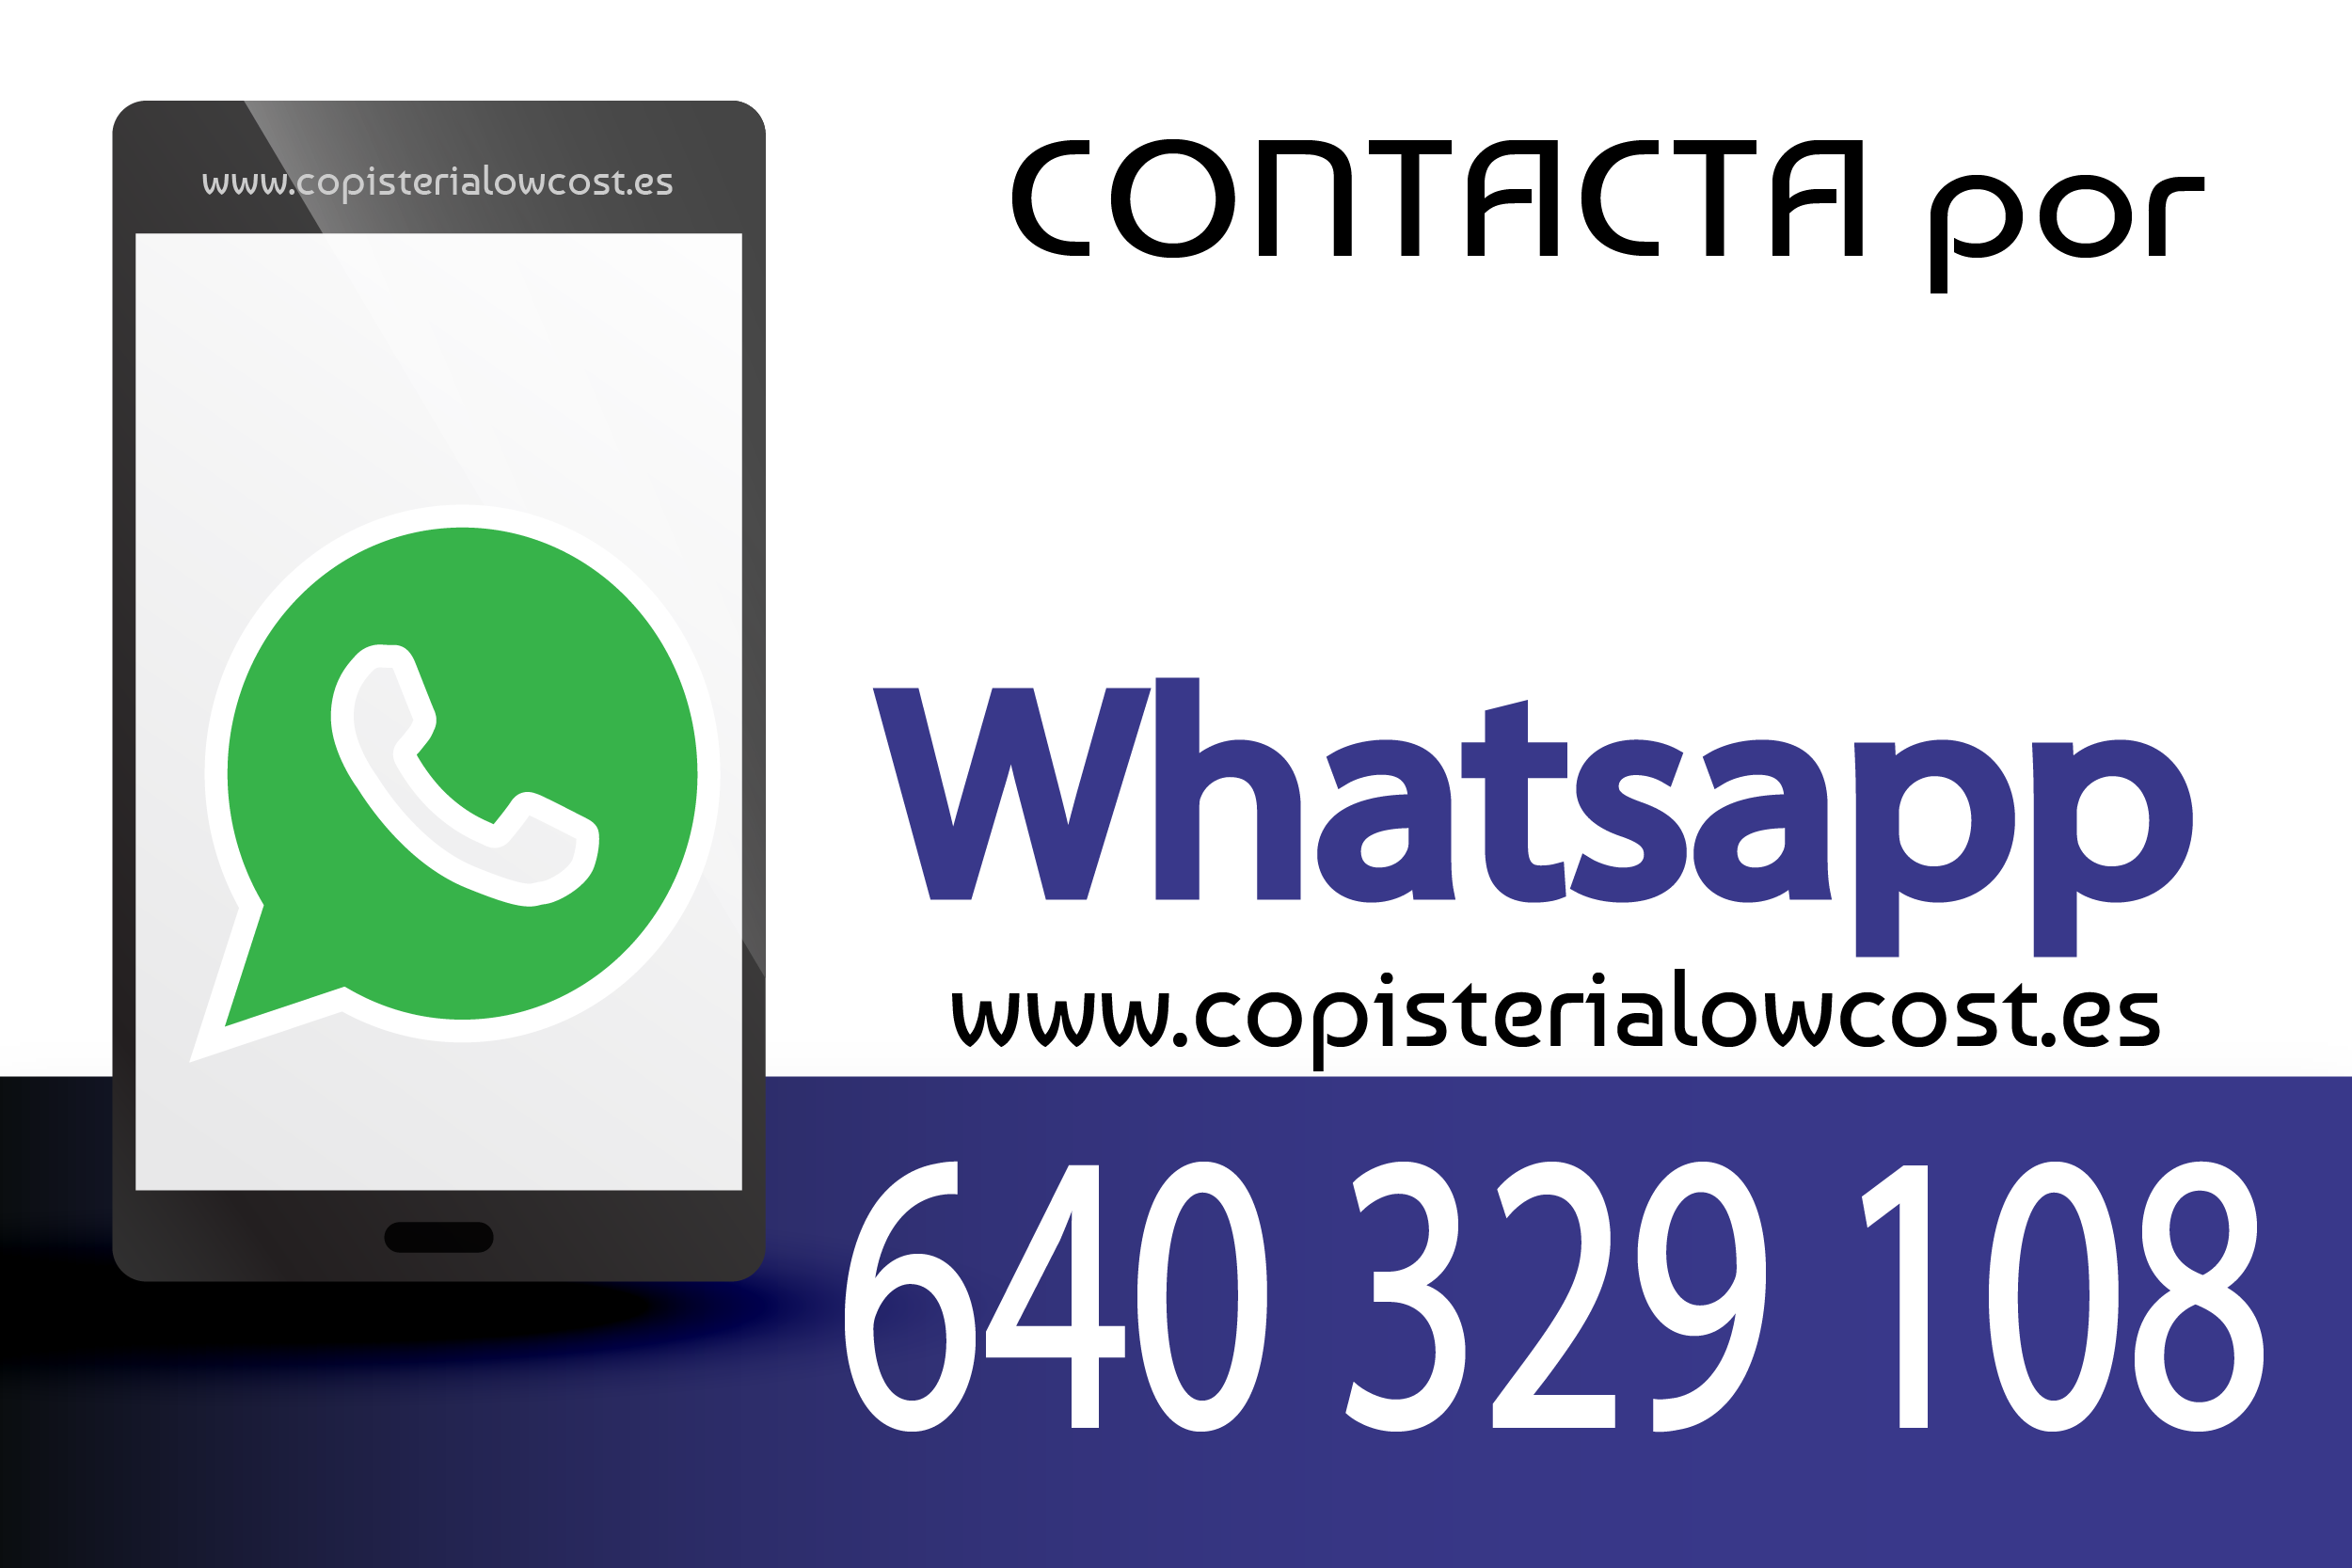 Whatsapp_Copisteria-lowcost